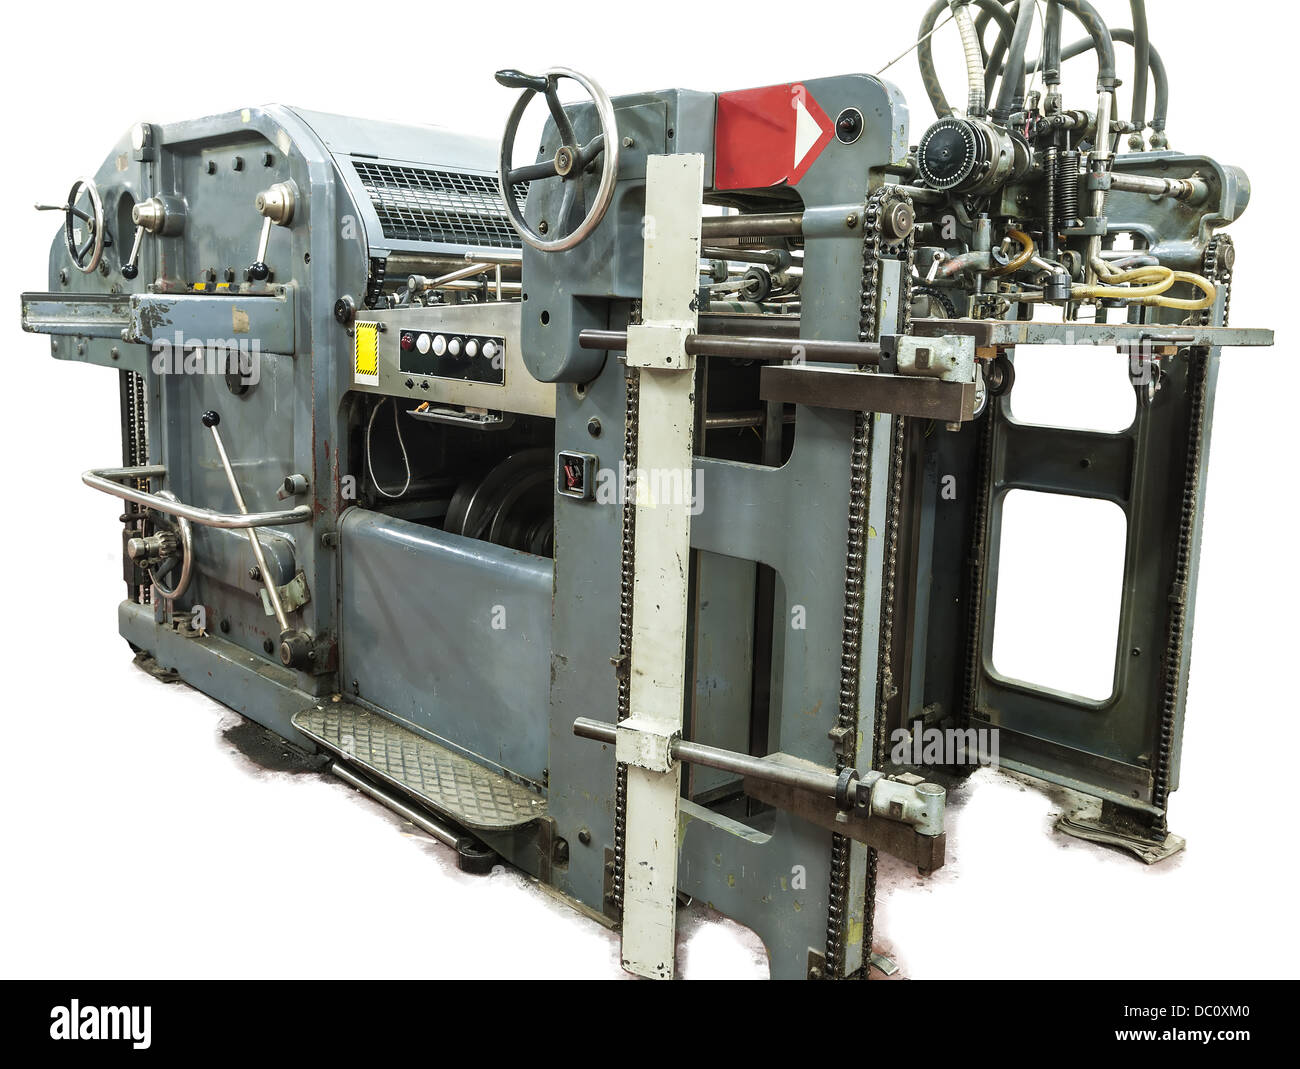 Vue d'un élément d'une machine dans un document de l'industrie. Il montre une partie de la machine dans un processus de travail. Banque D'Images